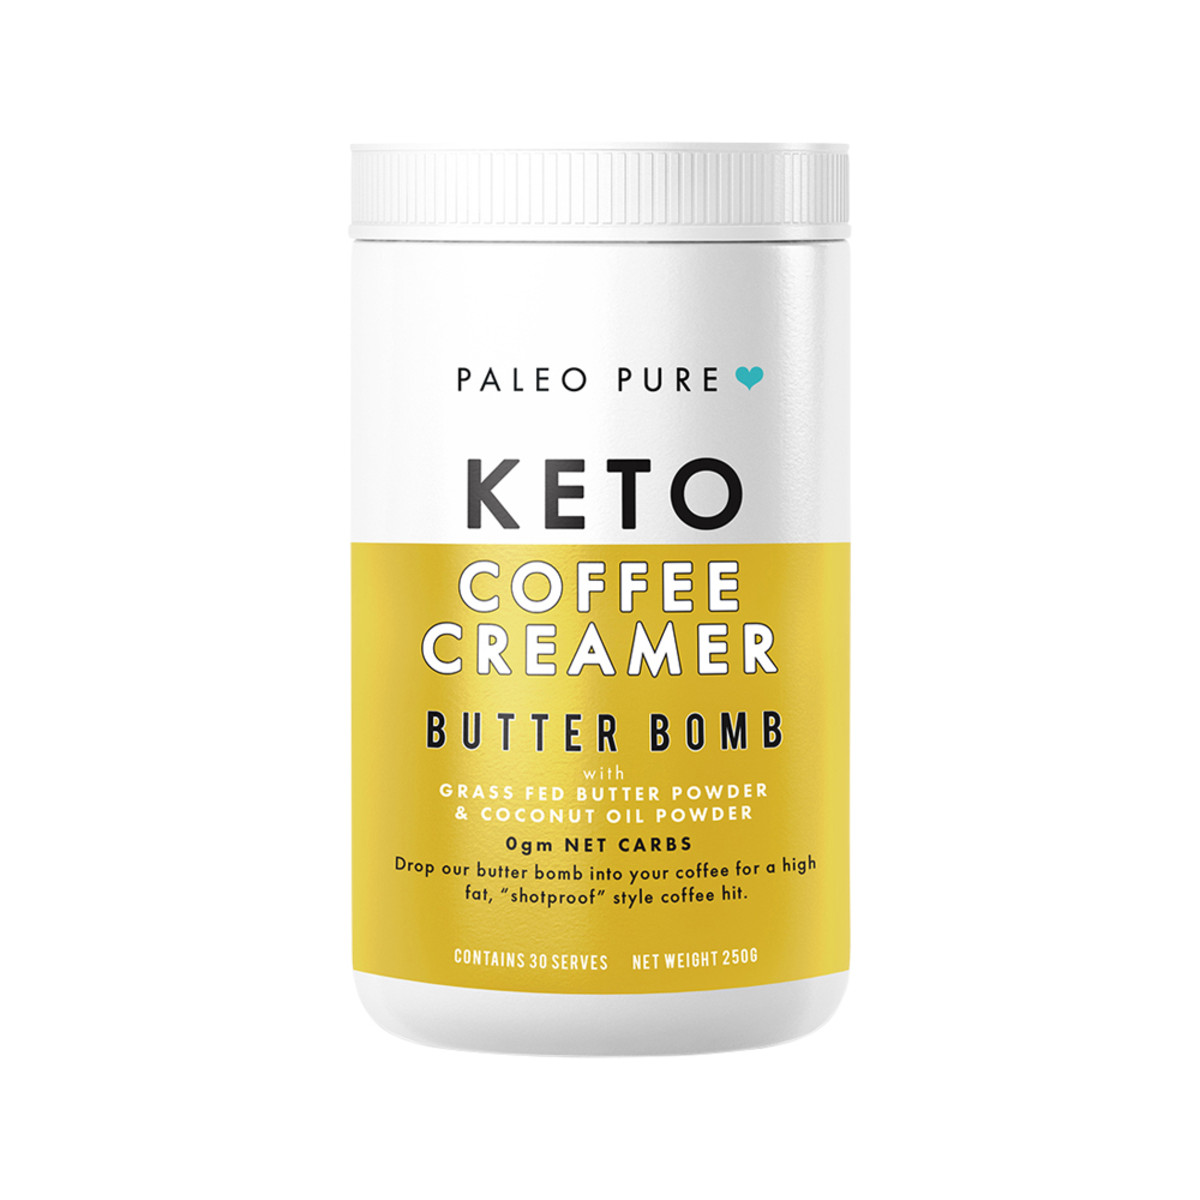 PALEO PURE - Keto Coffee Creamer Butter Bomb